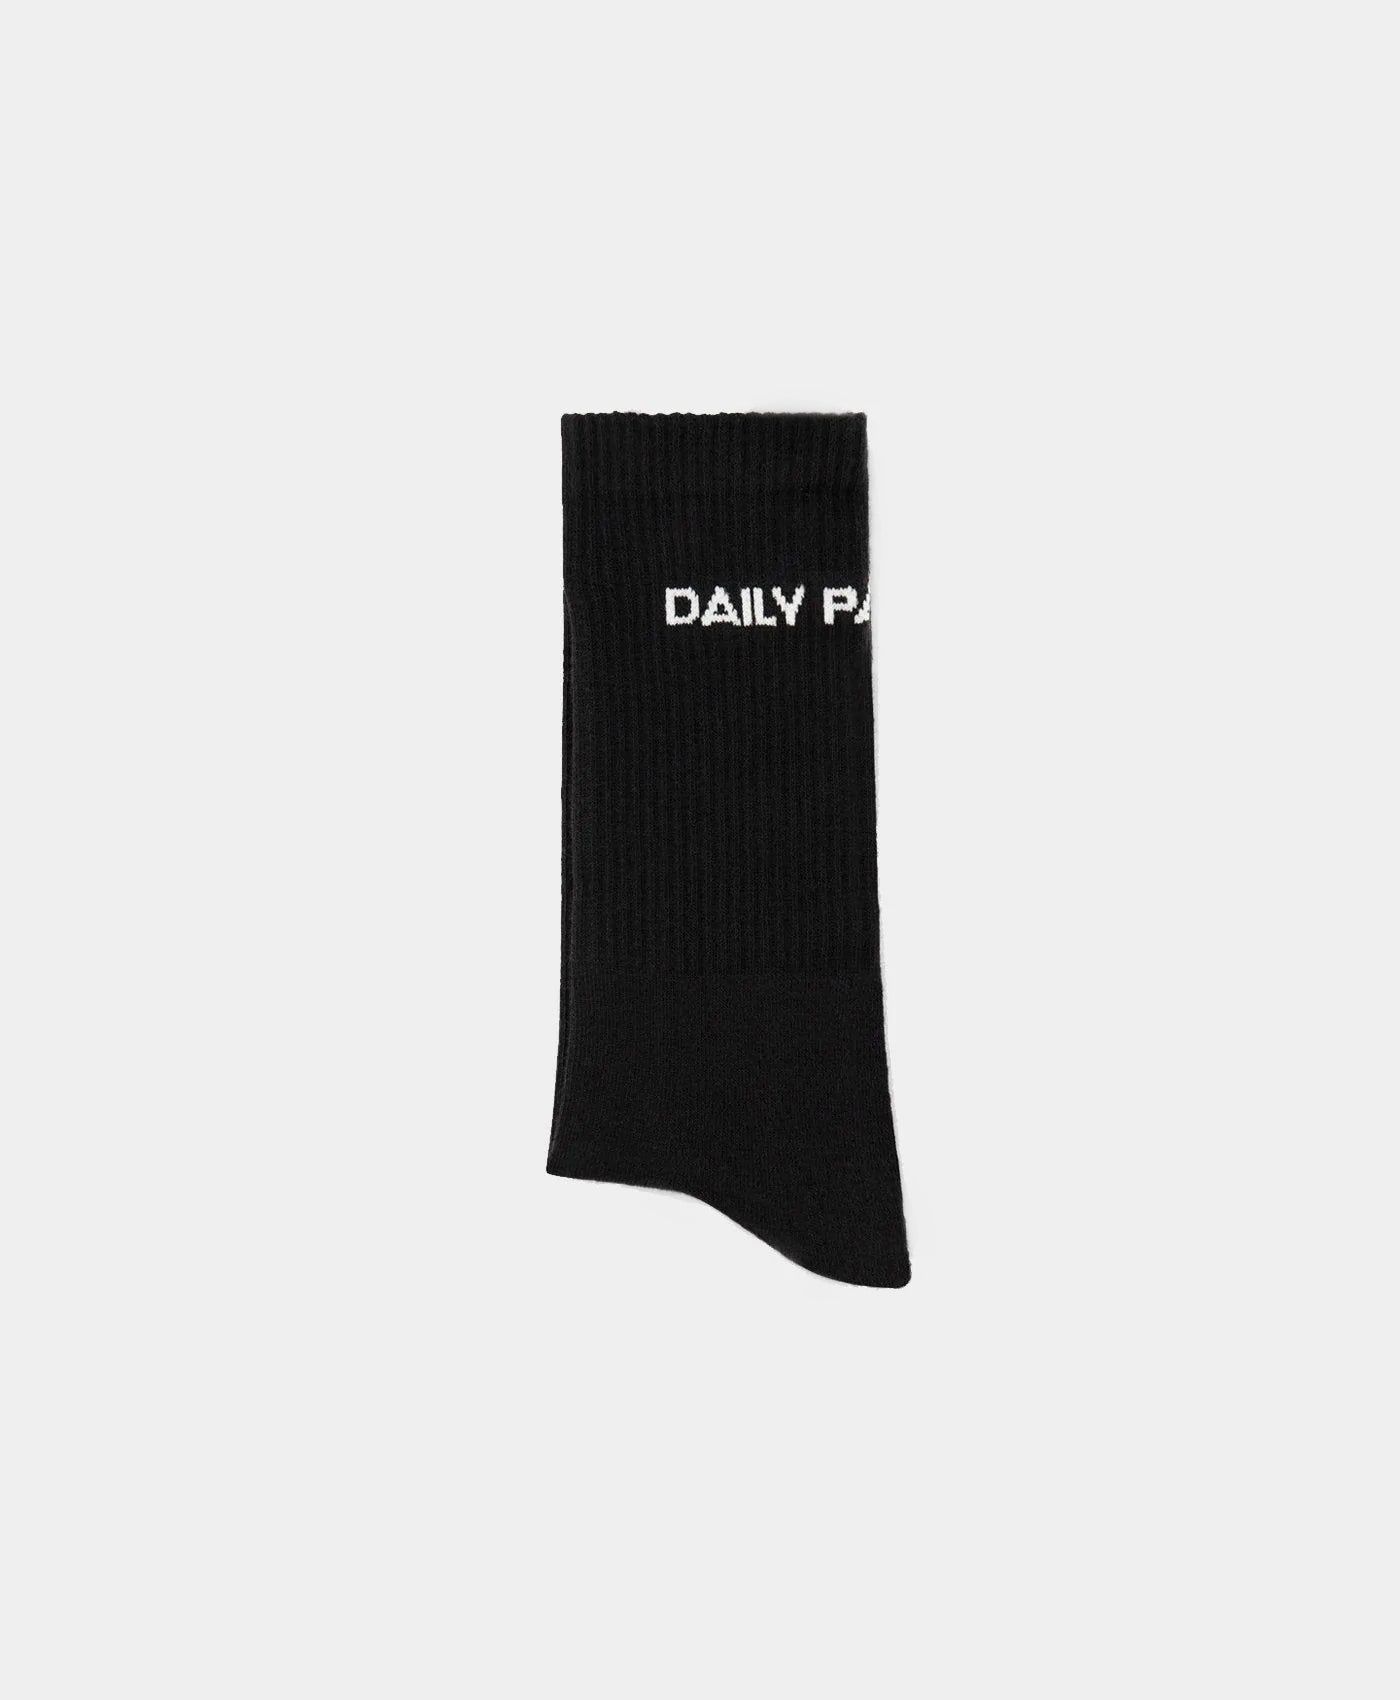 DP - Black White Etype Socks - Packshot - Rear